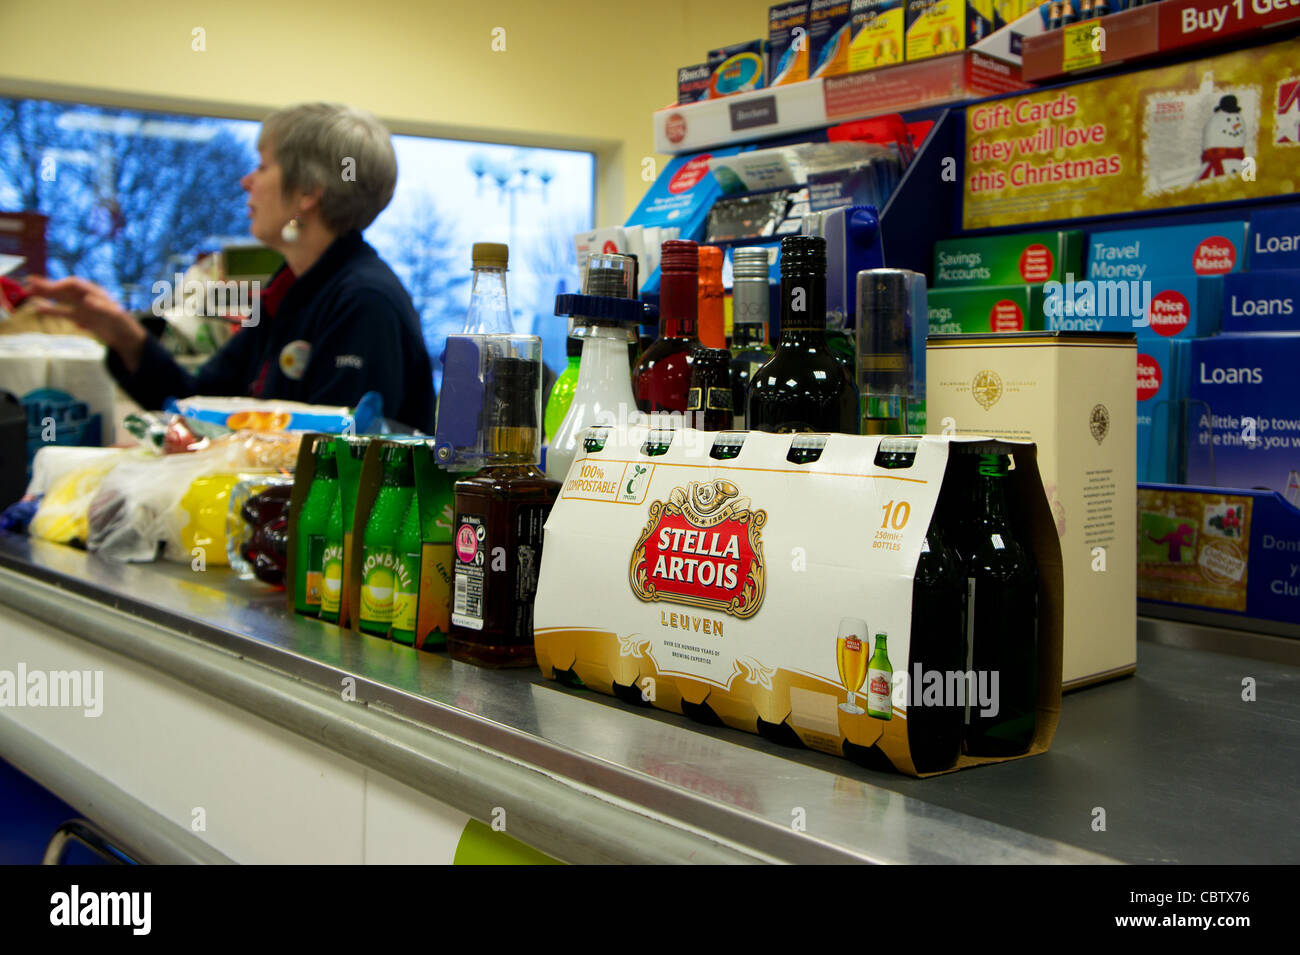 Beaucoup d'alcool au supermarché Tesco check-out, uk Banque D'Images